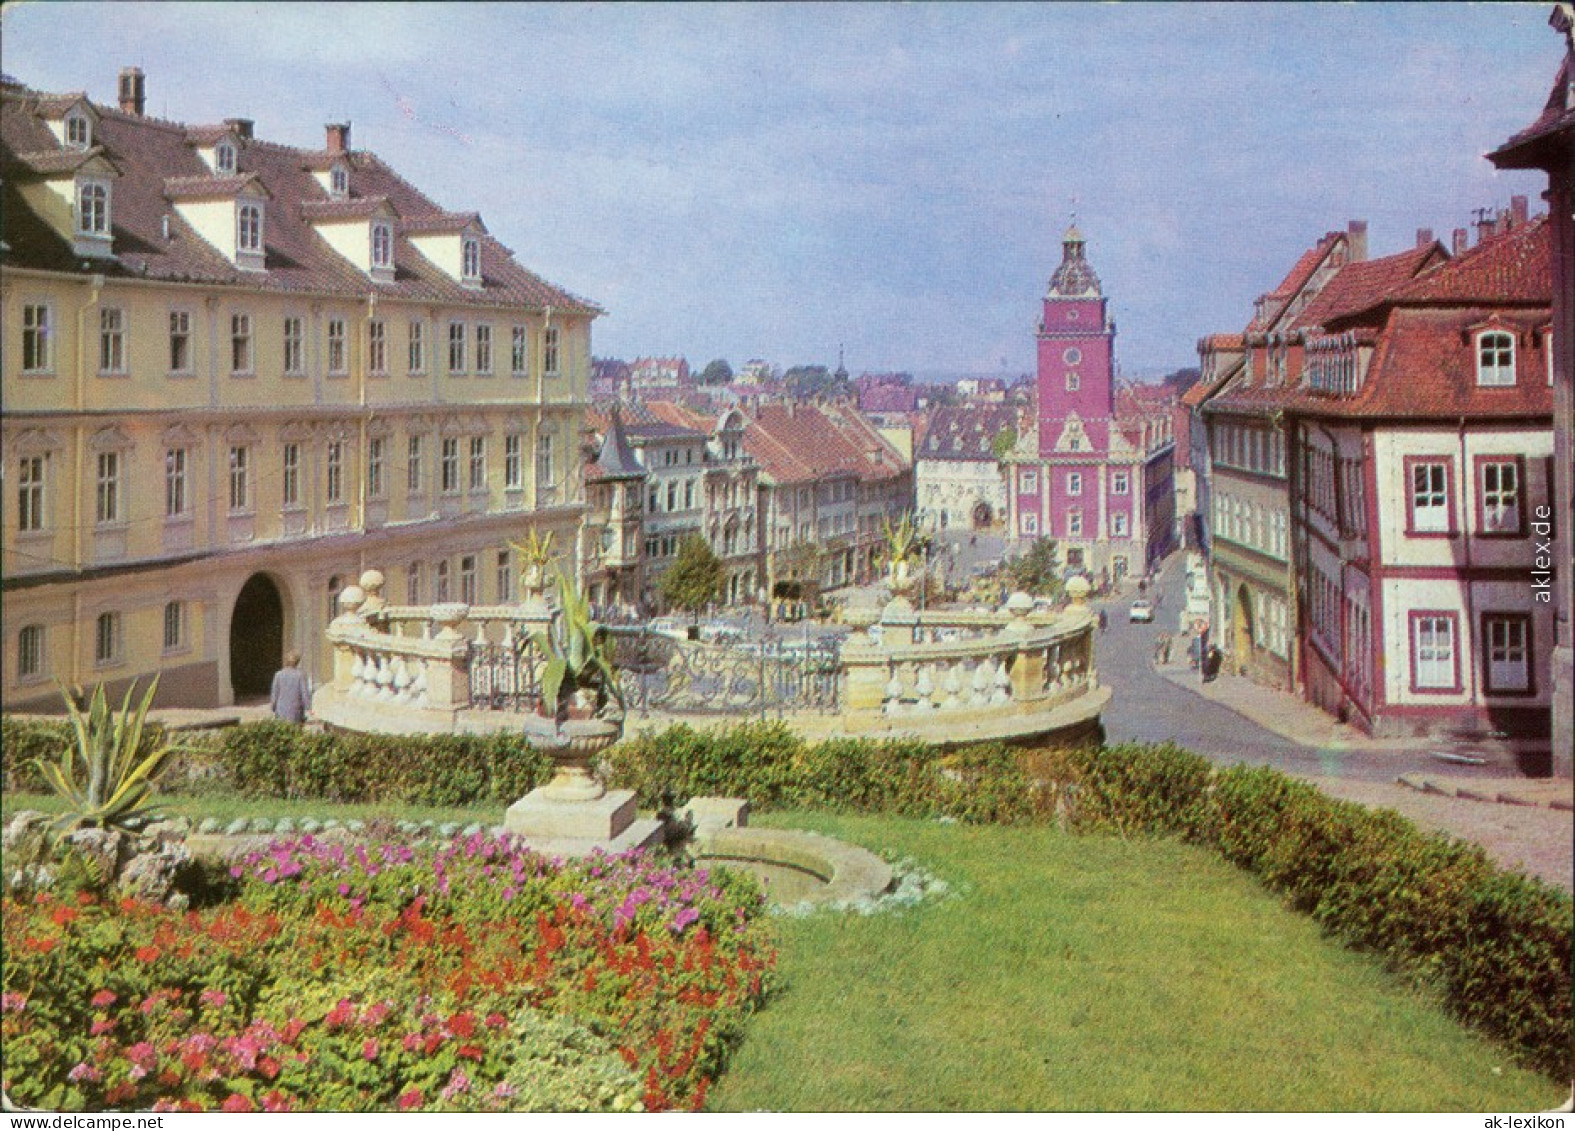 Ansichtskarte Gotha Wasserkunst, Hauptmarkt Und Rathaus 1970 - Gotha